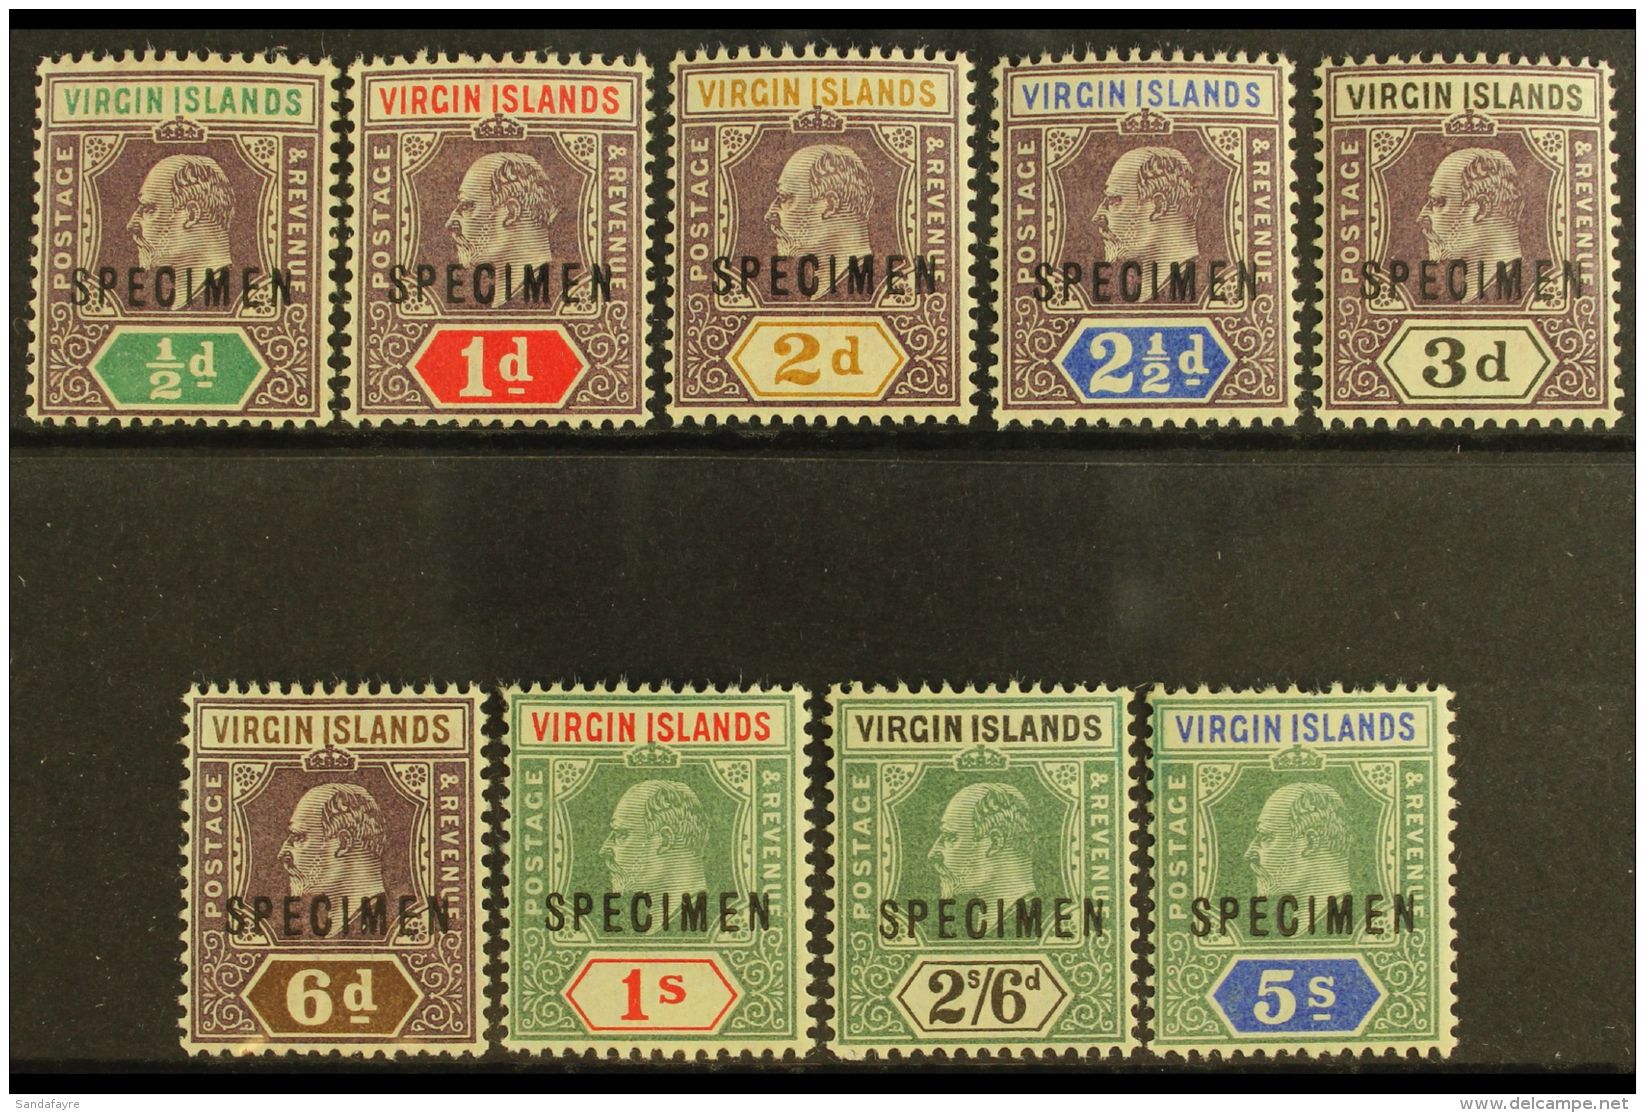 1904  Ed VII Set Wmk MCA, Ovptd "Specimen", SG 54s/62s, Fine Mint. (9 Stamps) For More Images, Please Visit... - British Virgin Islands